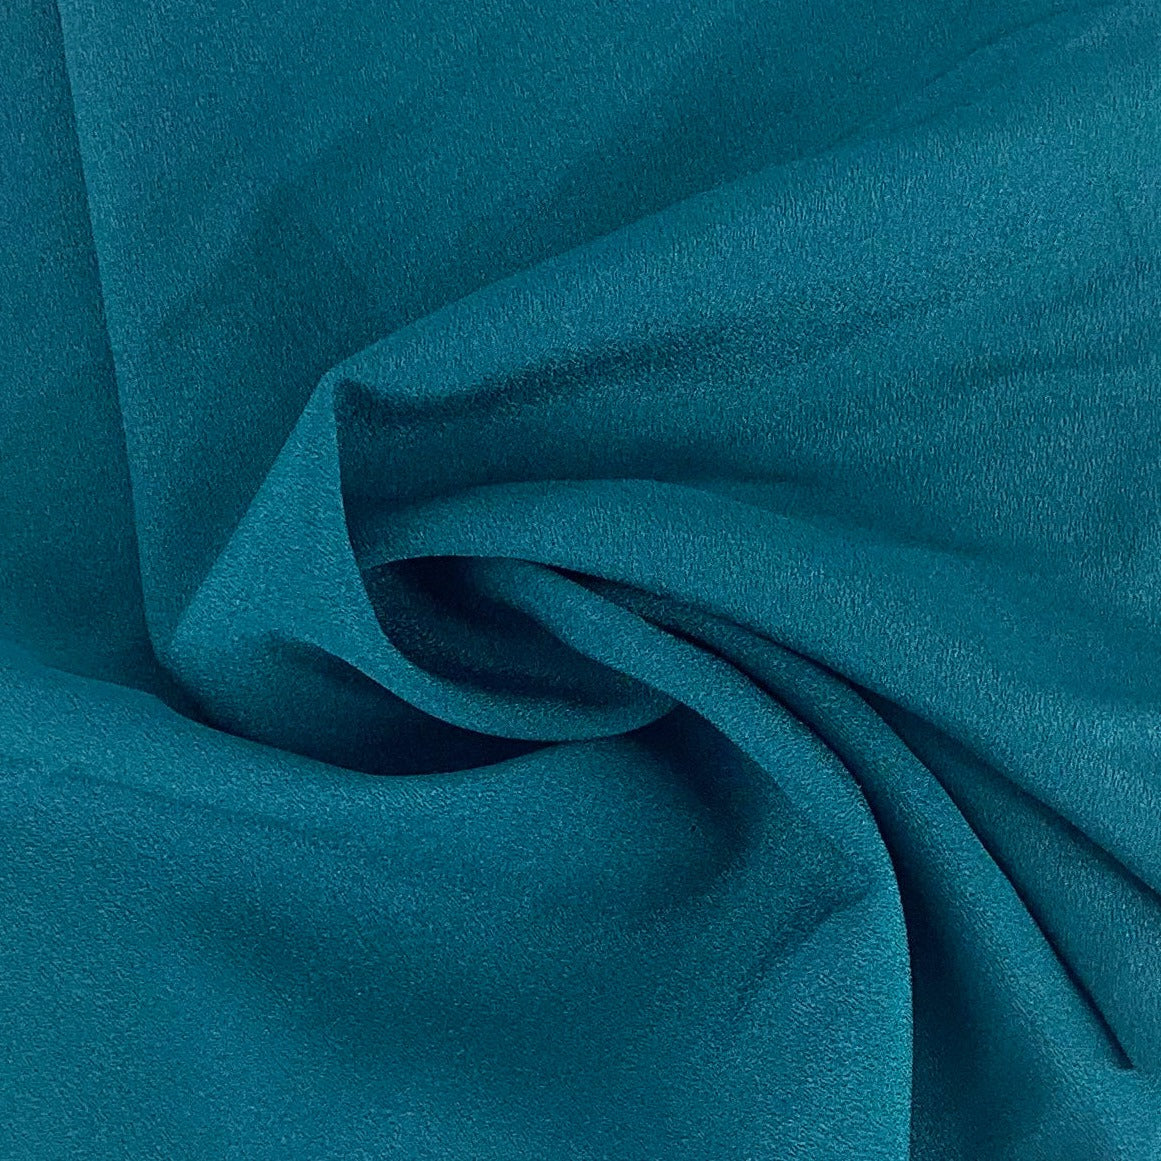 Teal #S210 Micro Crepe Woven Fabric - SKU 6966